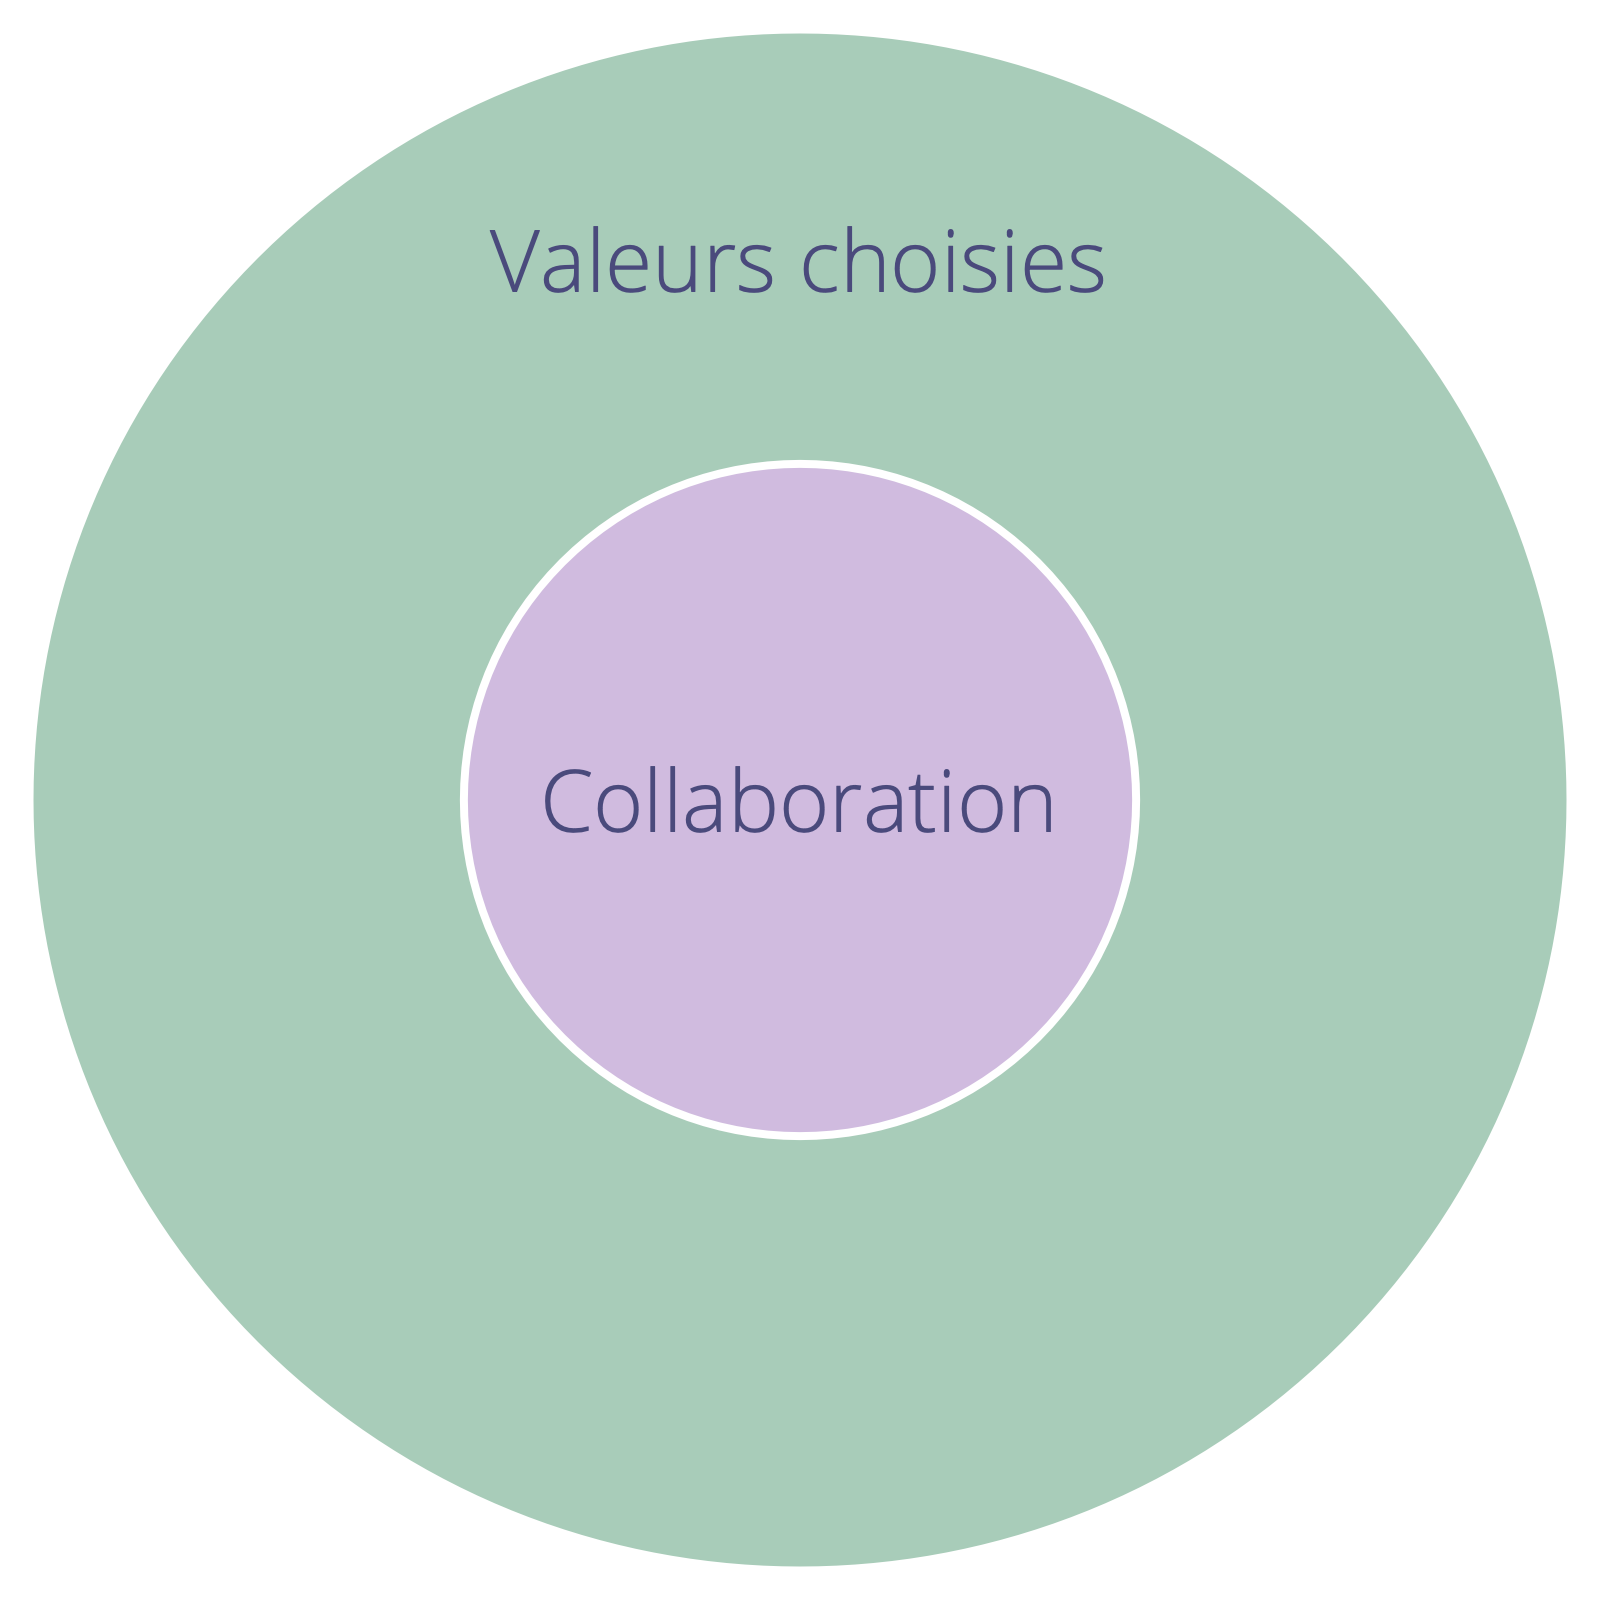 Les valeurs choisies définissent les contraintes de collaboration